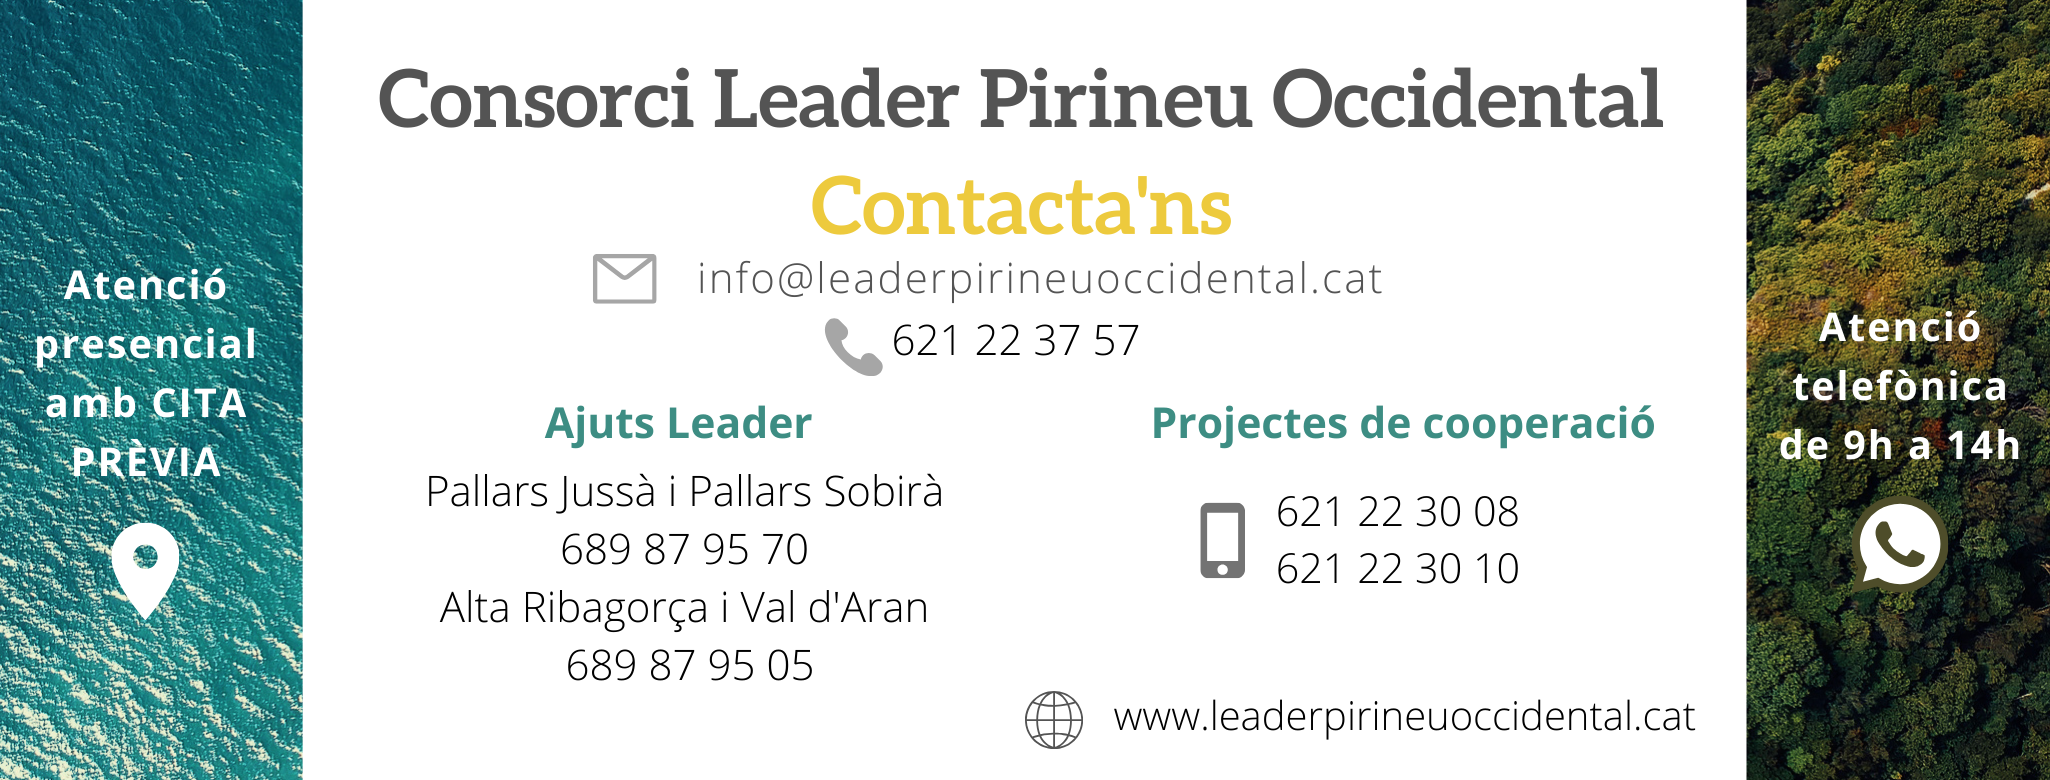 Consorci Leader Pirineu Occidental Contacte